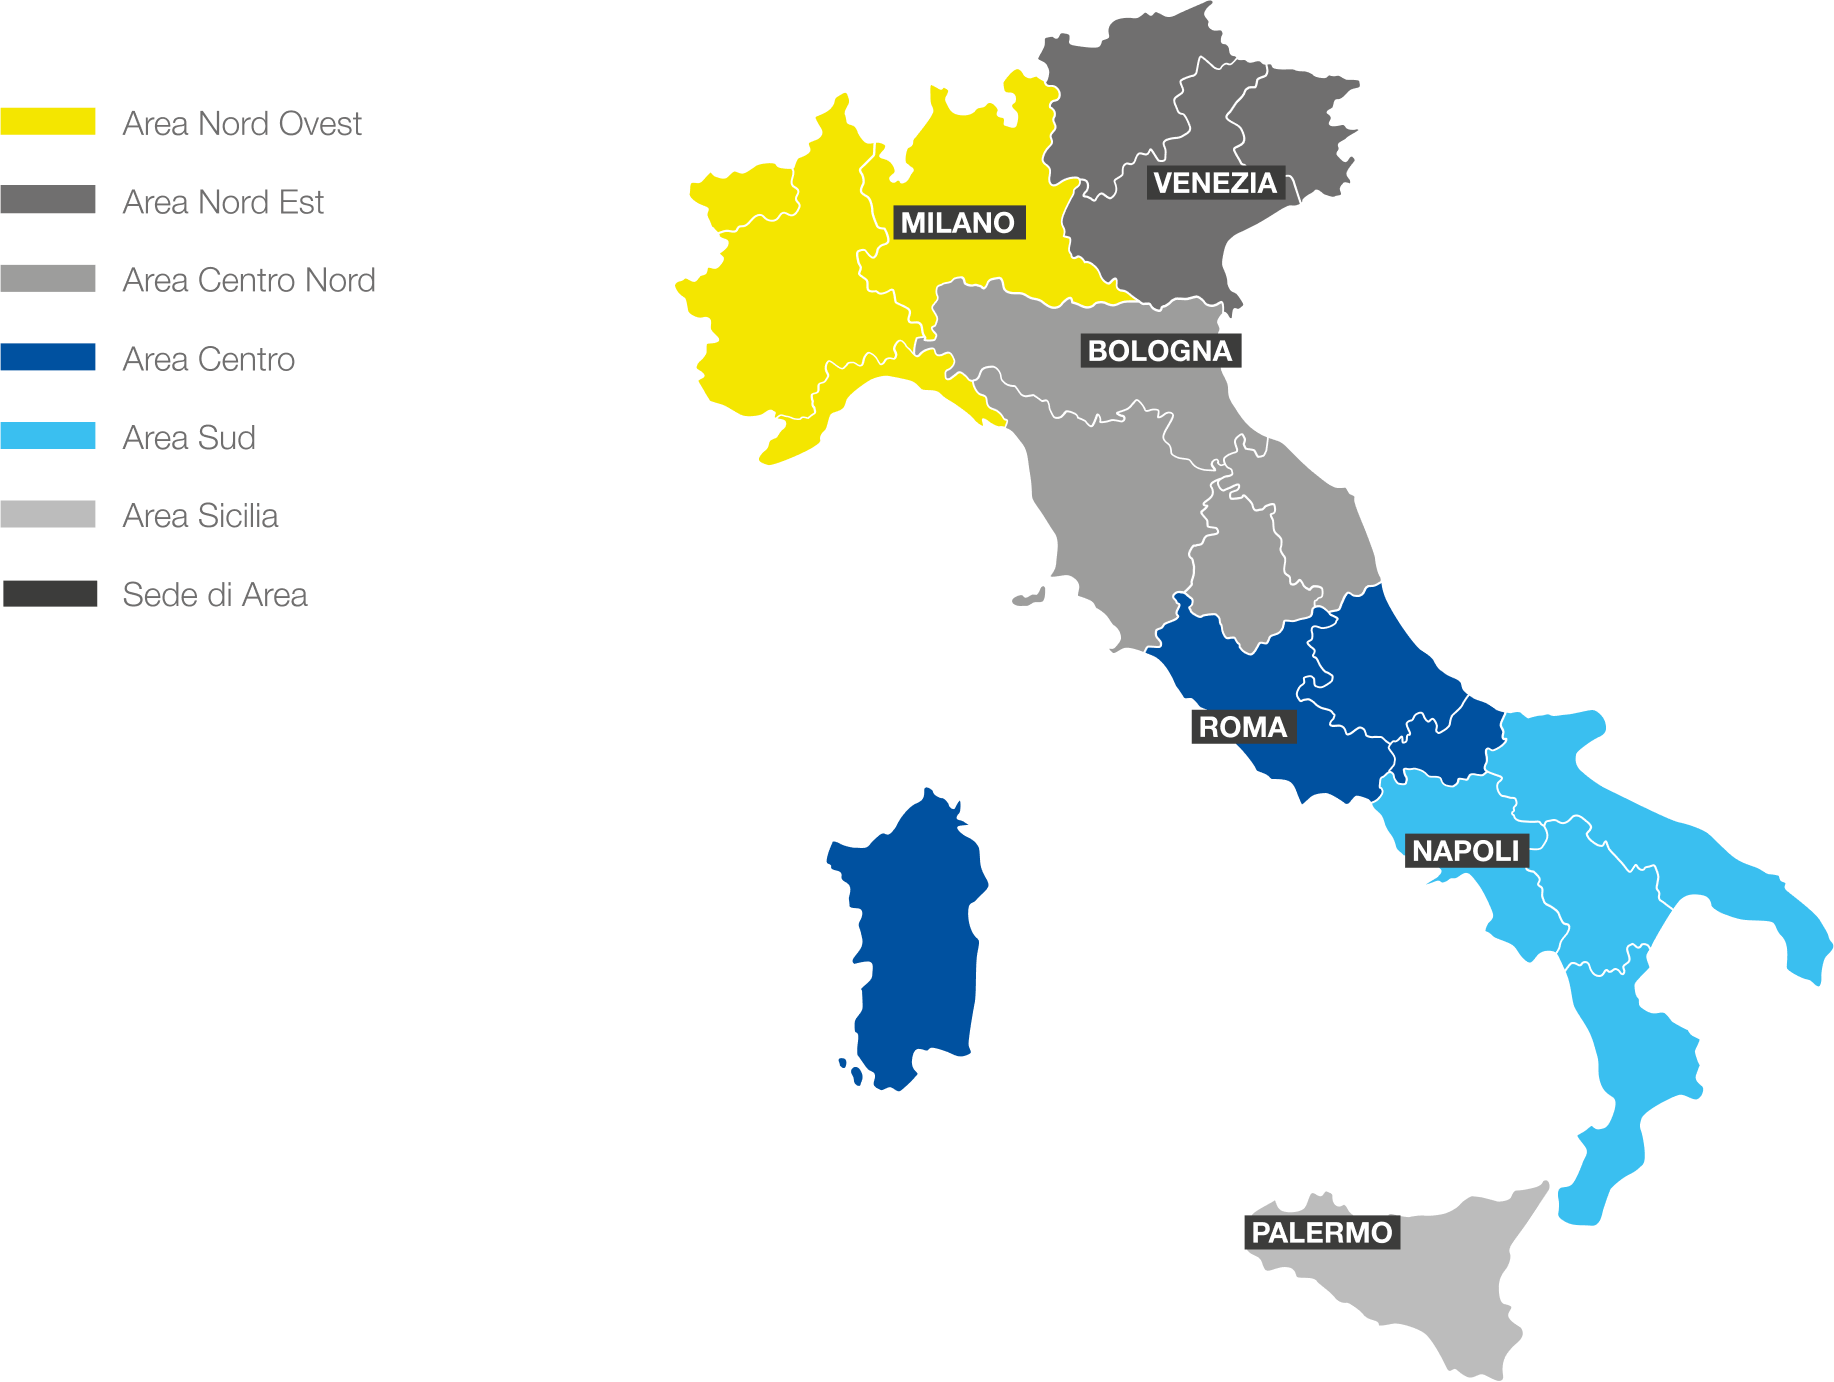 Macro aree Mercato Privati: Area Nord Ovest, Area Nord Est, AreaCentro Nord, Area Centro, Area Sud, Area Sicilia